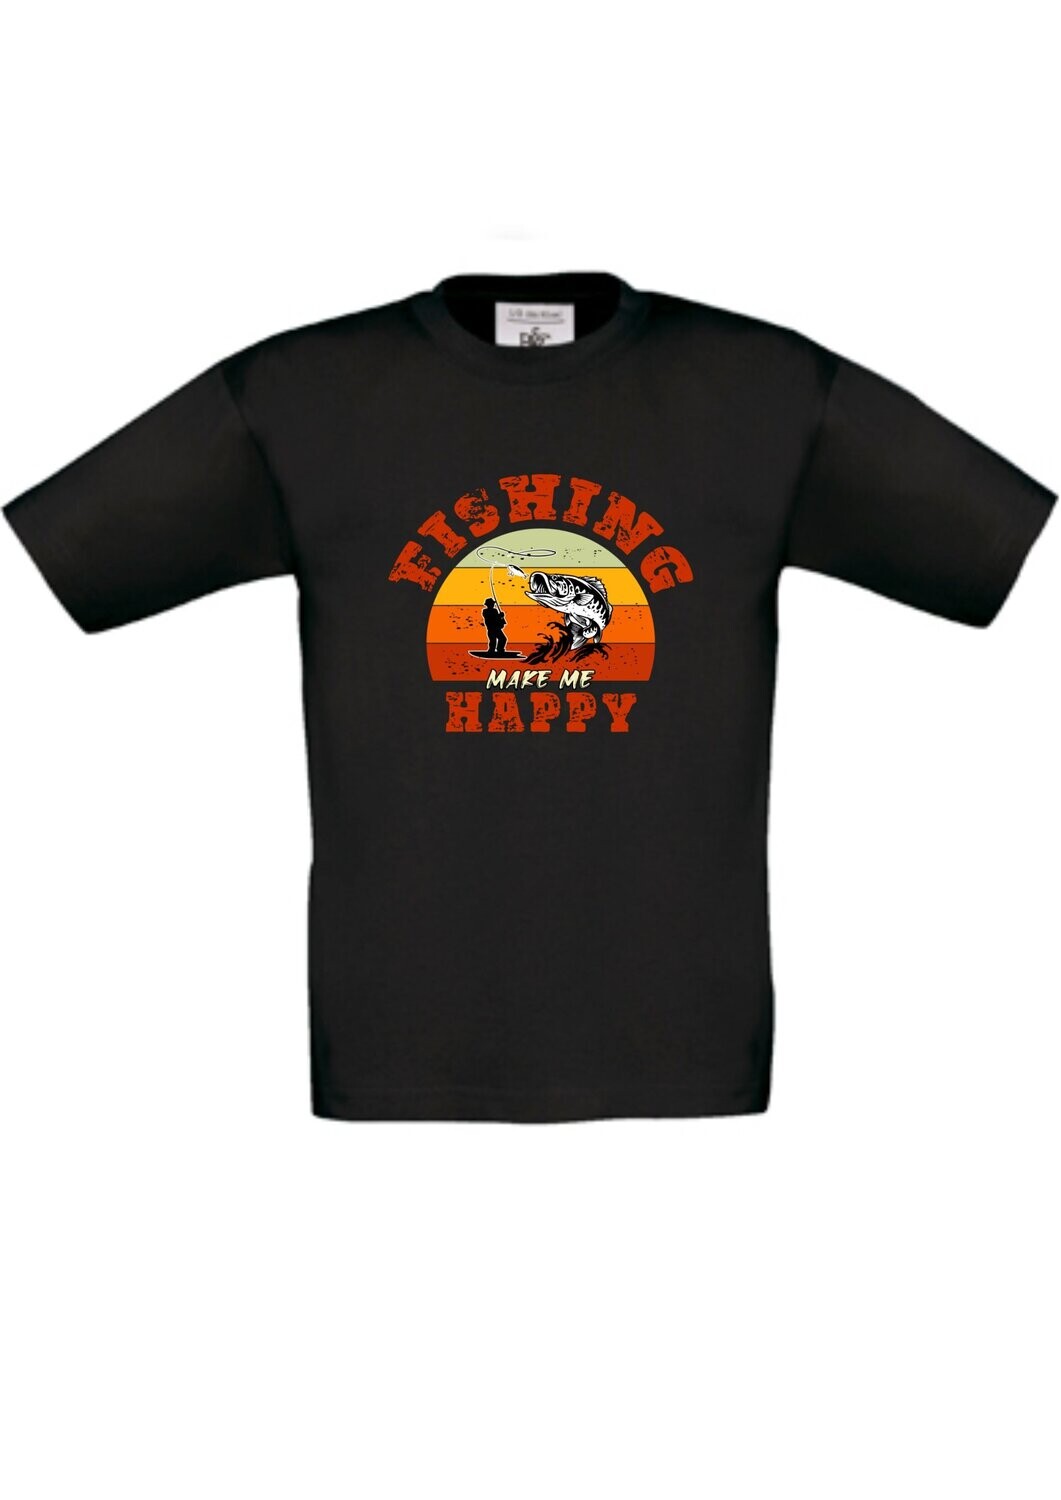 Herren T-Shirt Happy Fishing